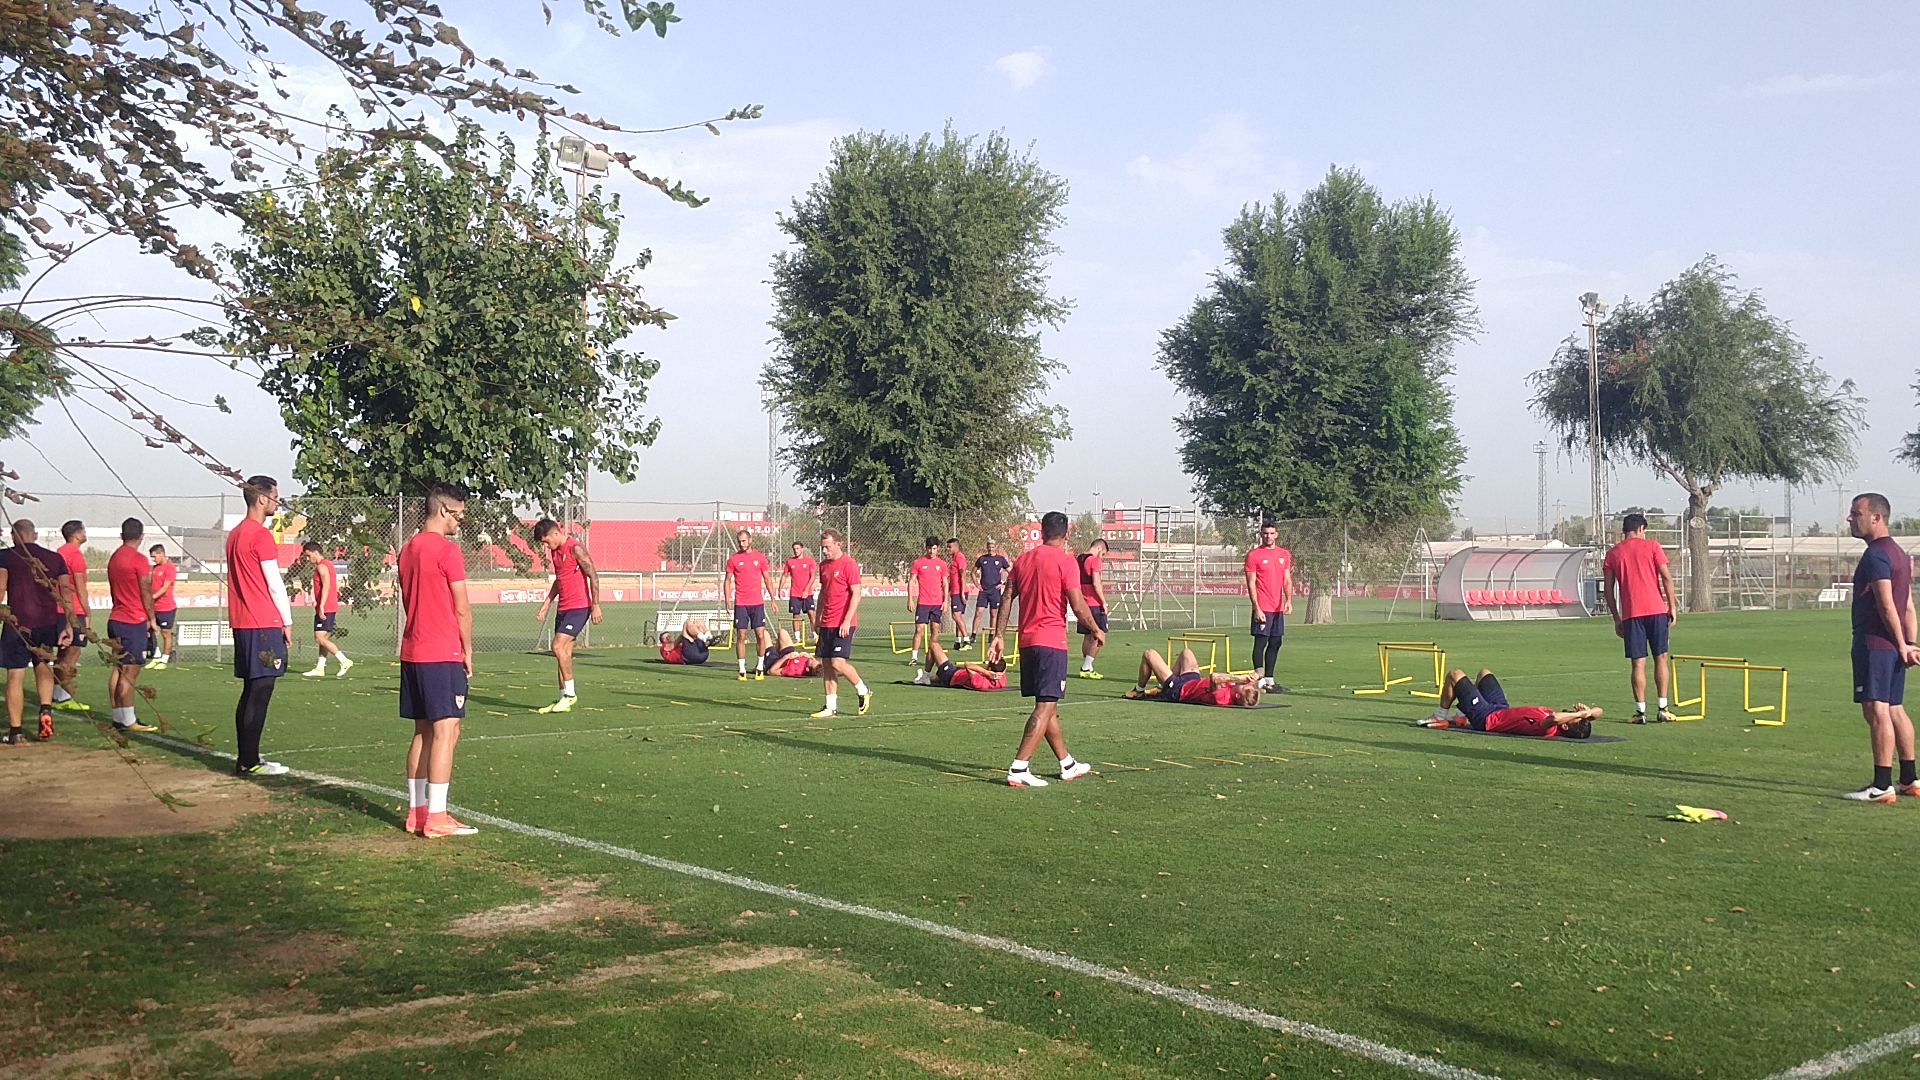 Sevilla FC training in Sports Village